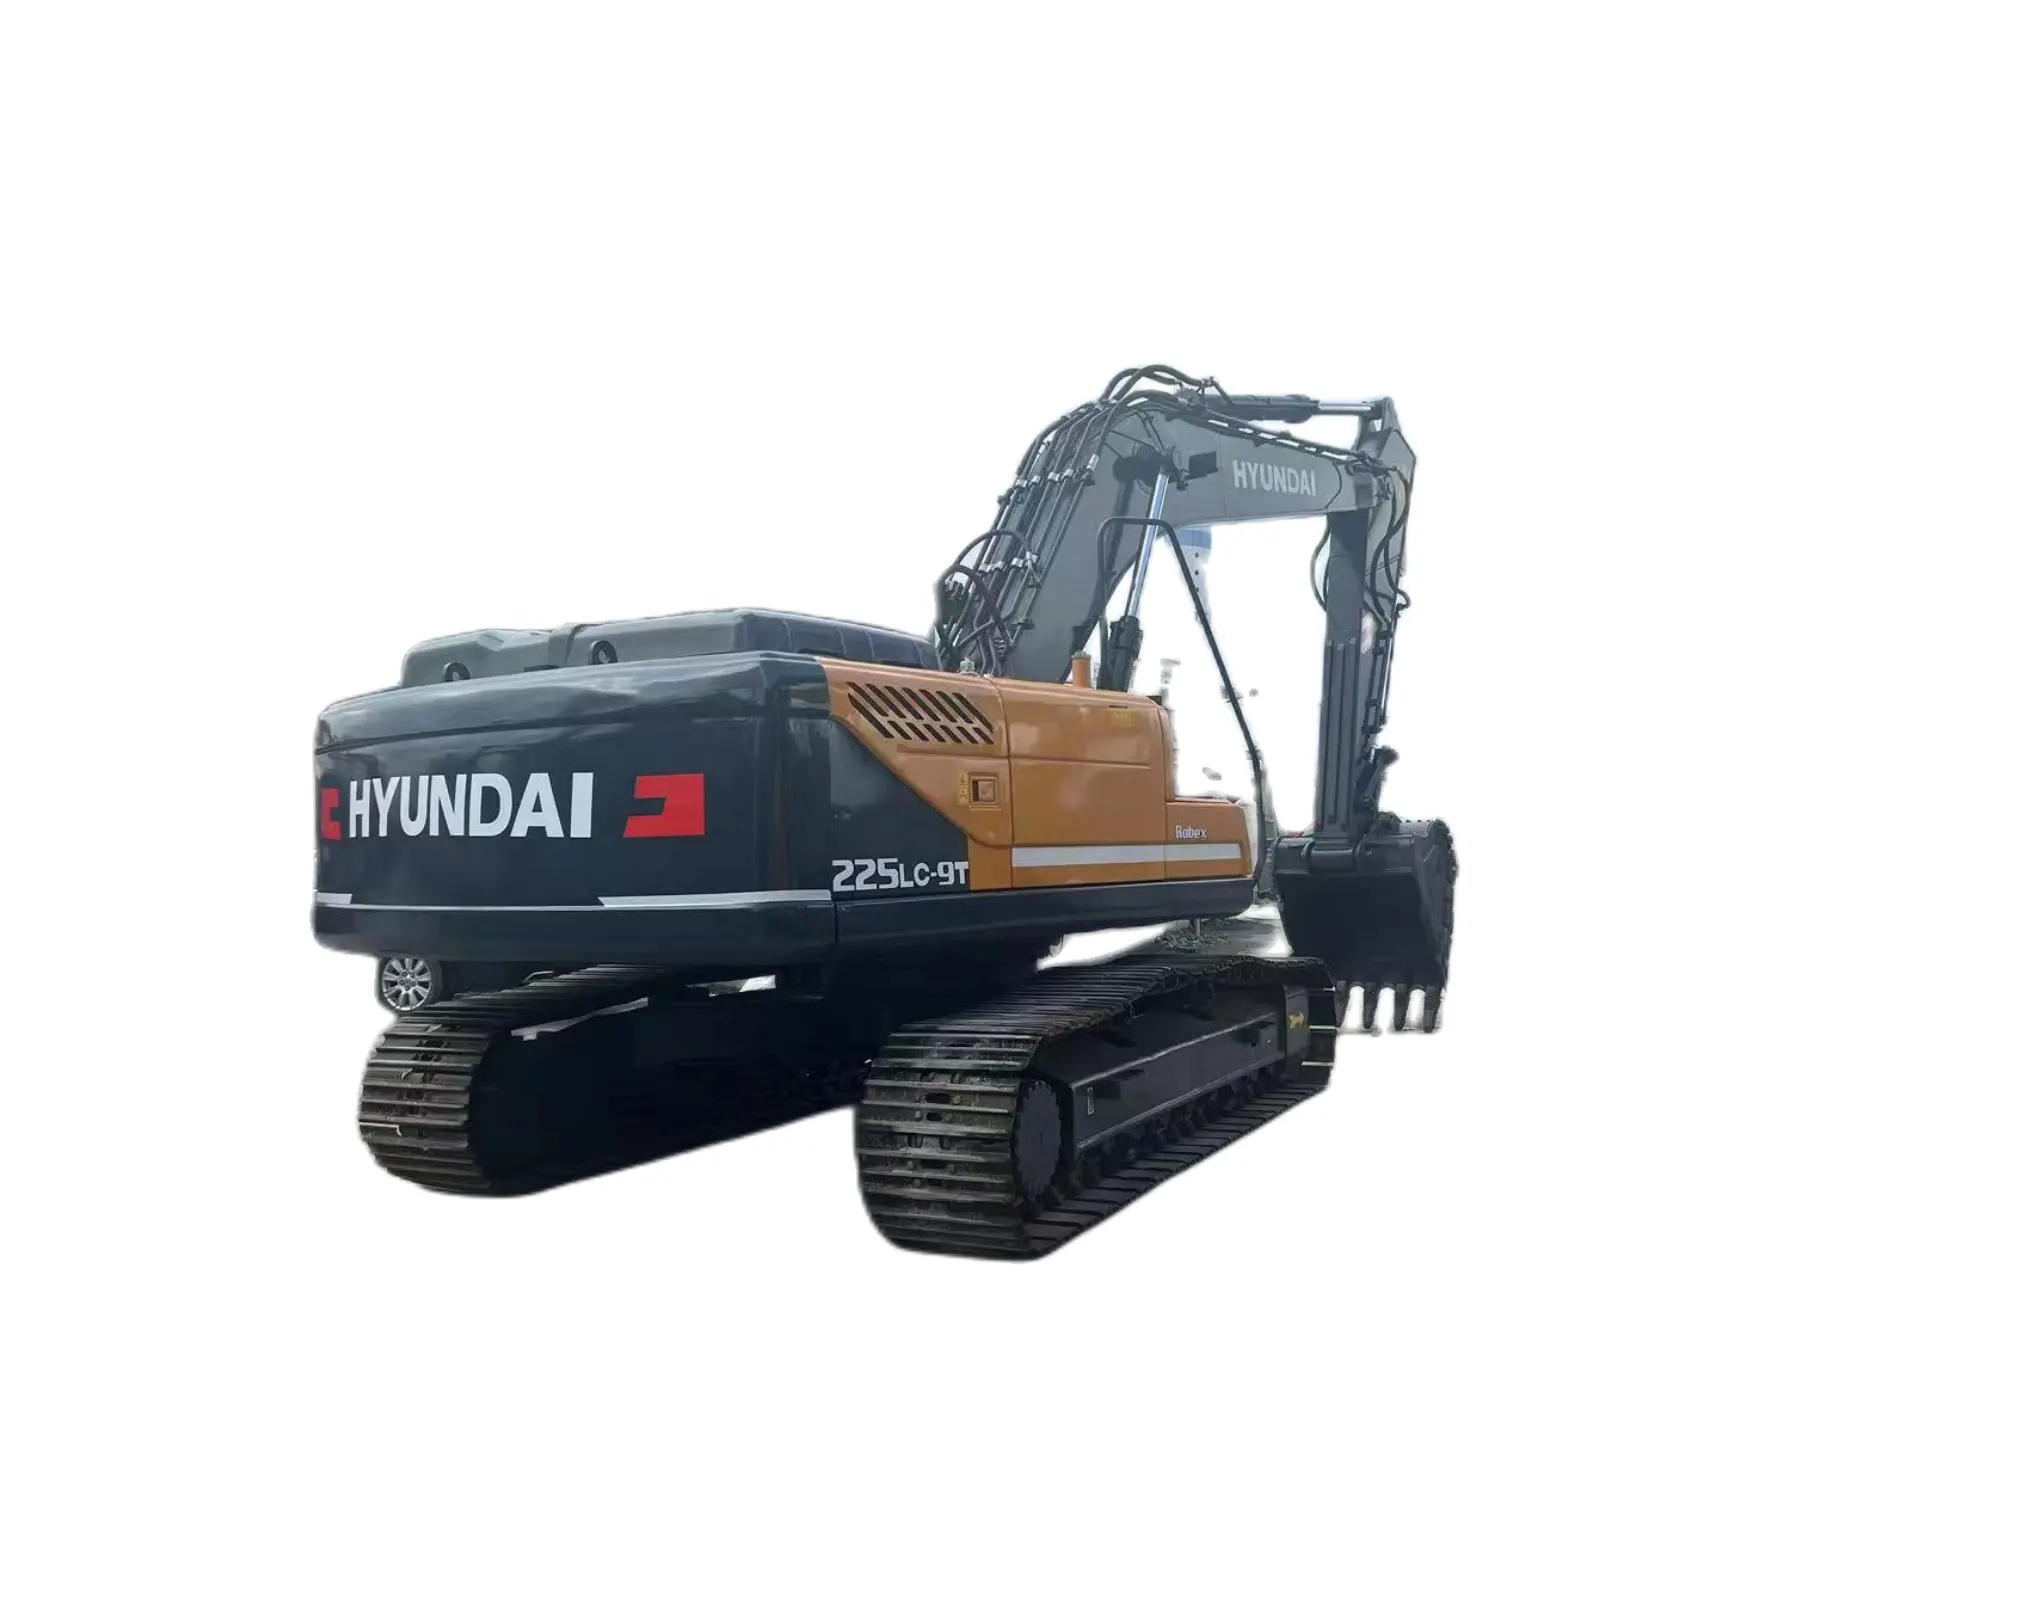 HyundaI-excavadora de orugas hidráulica usada, pero original, 220lc-9s, 225lc-9t, 20 toneladas, 220lc-9